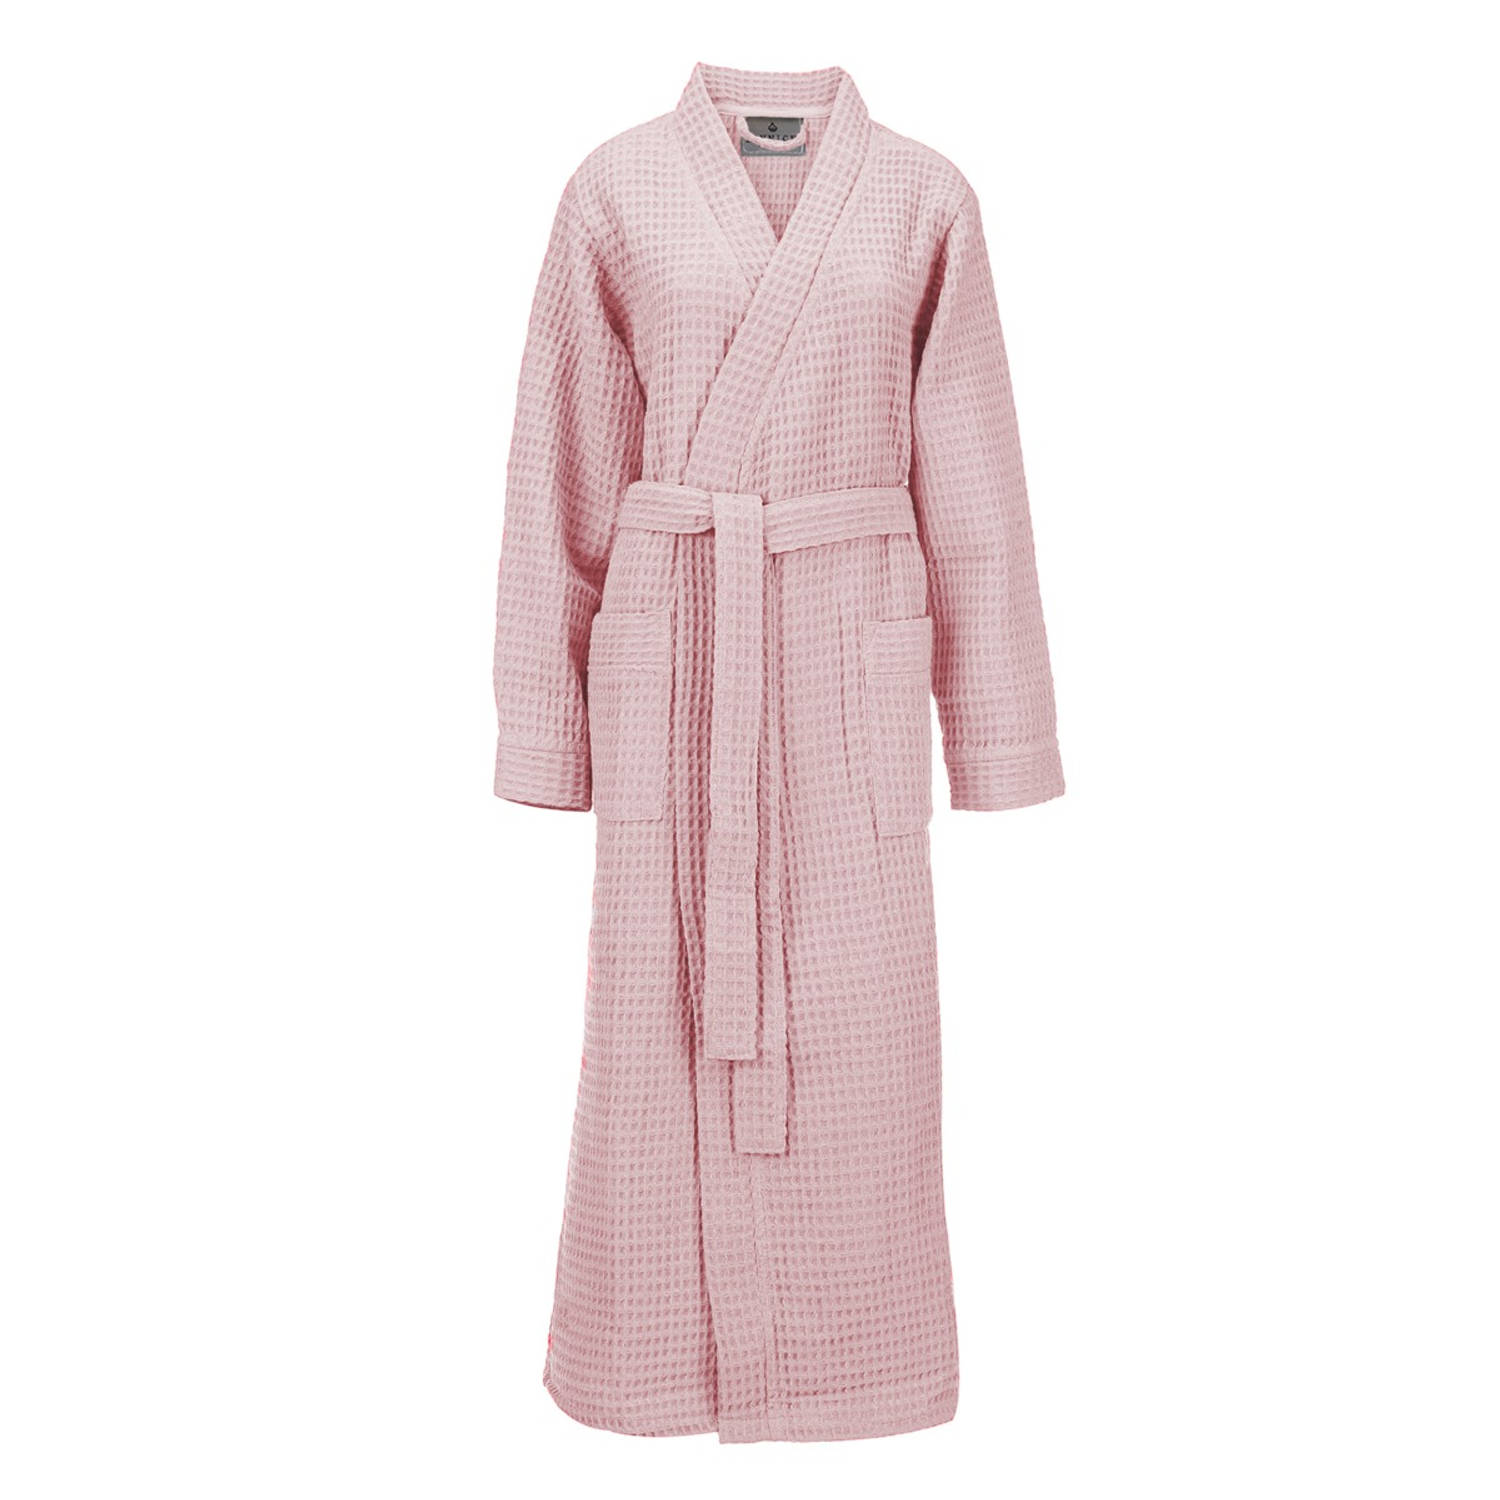 LINNICK Wafel Badjas - Maat XXL - Light Pink - Sauna badjas - 100% Katoen Badjas Dames - Badjas Heren